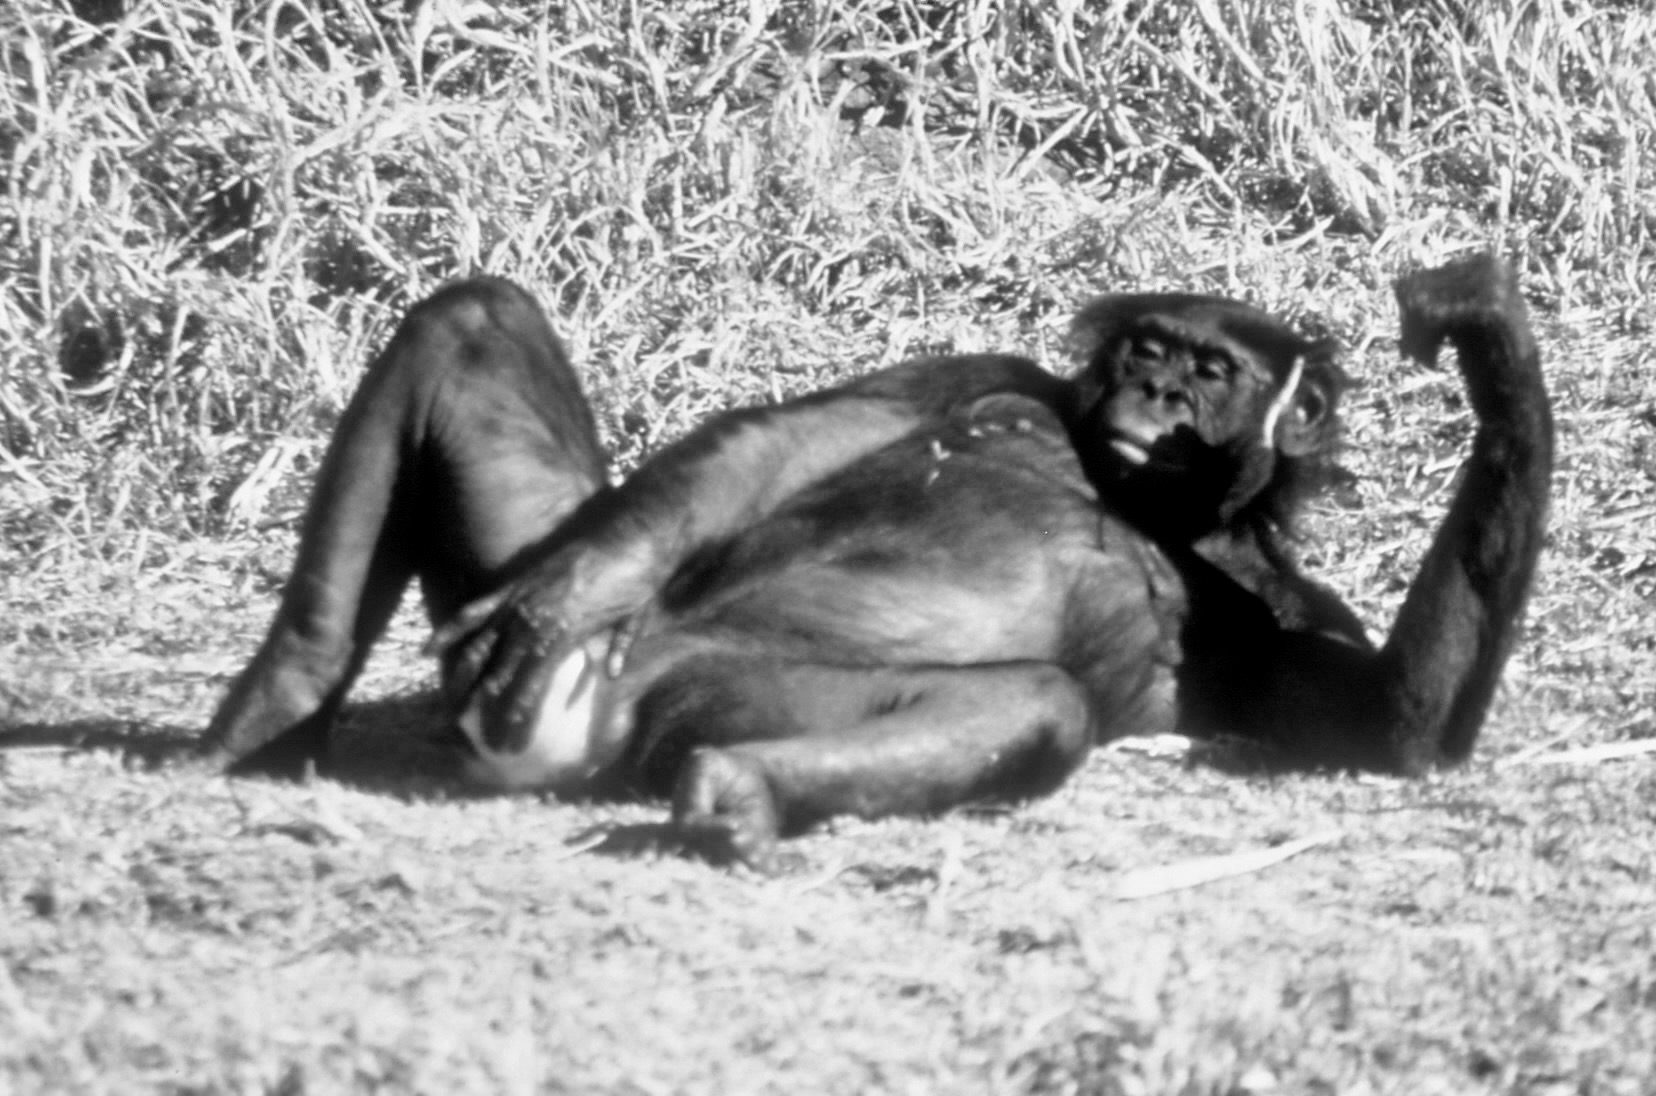 female bonobo masturbating